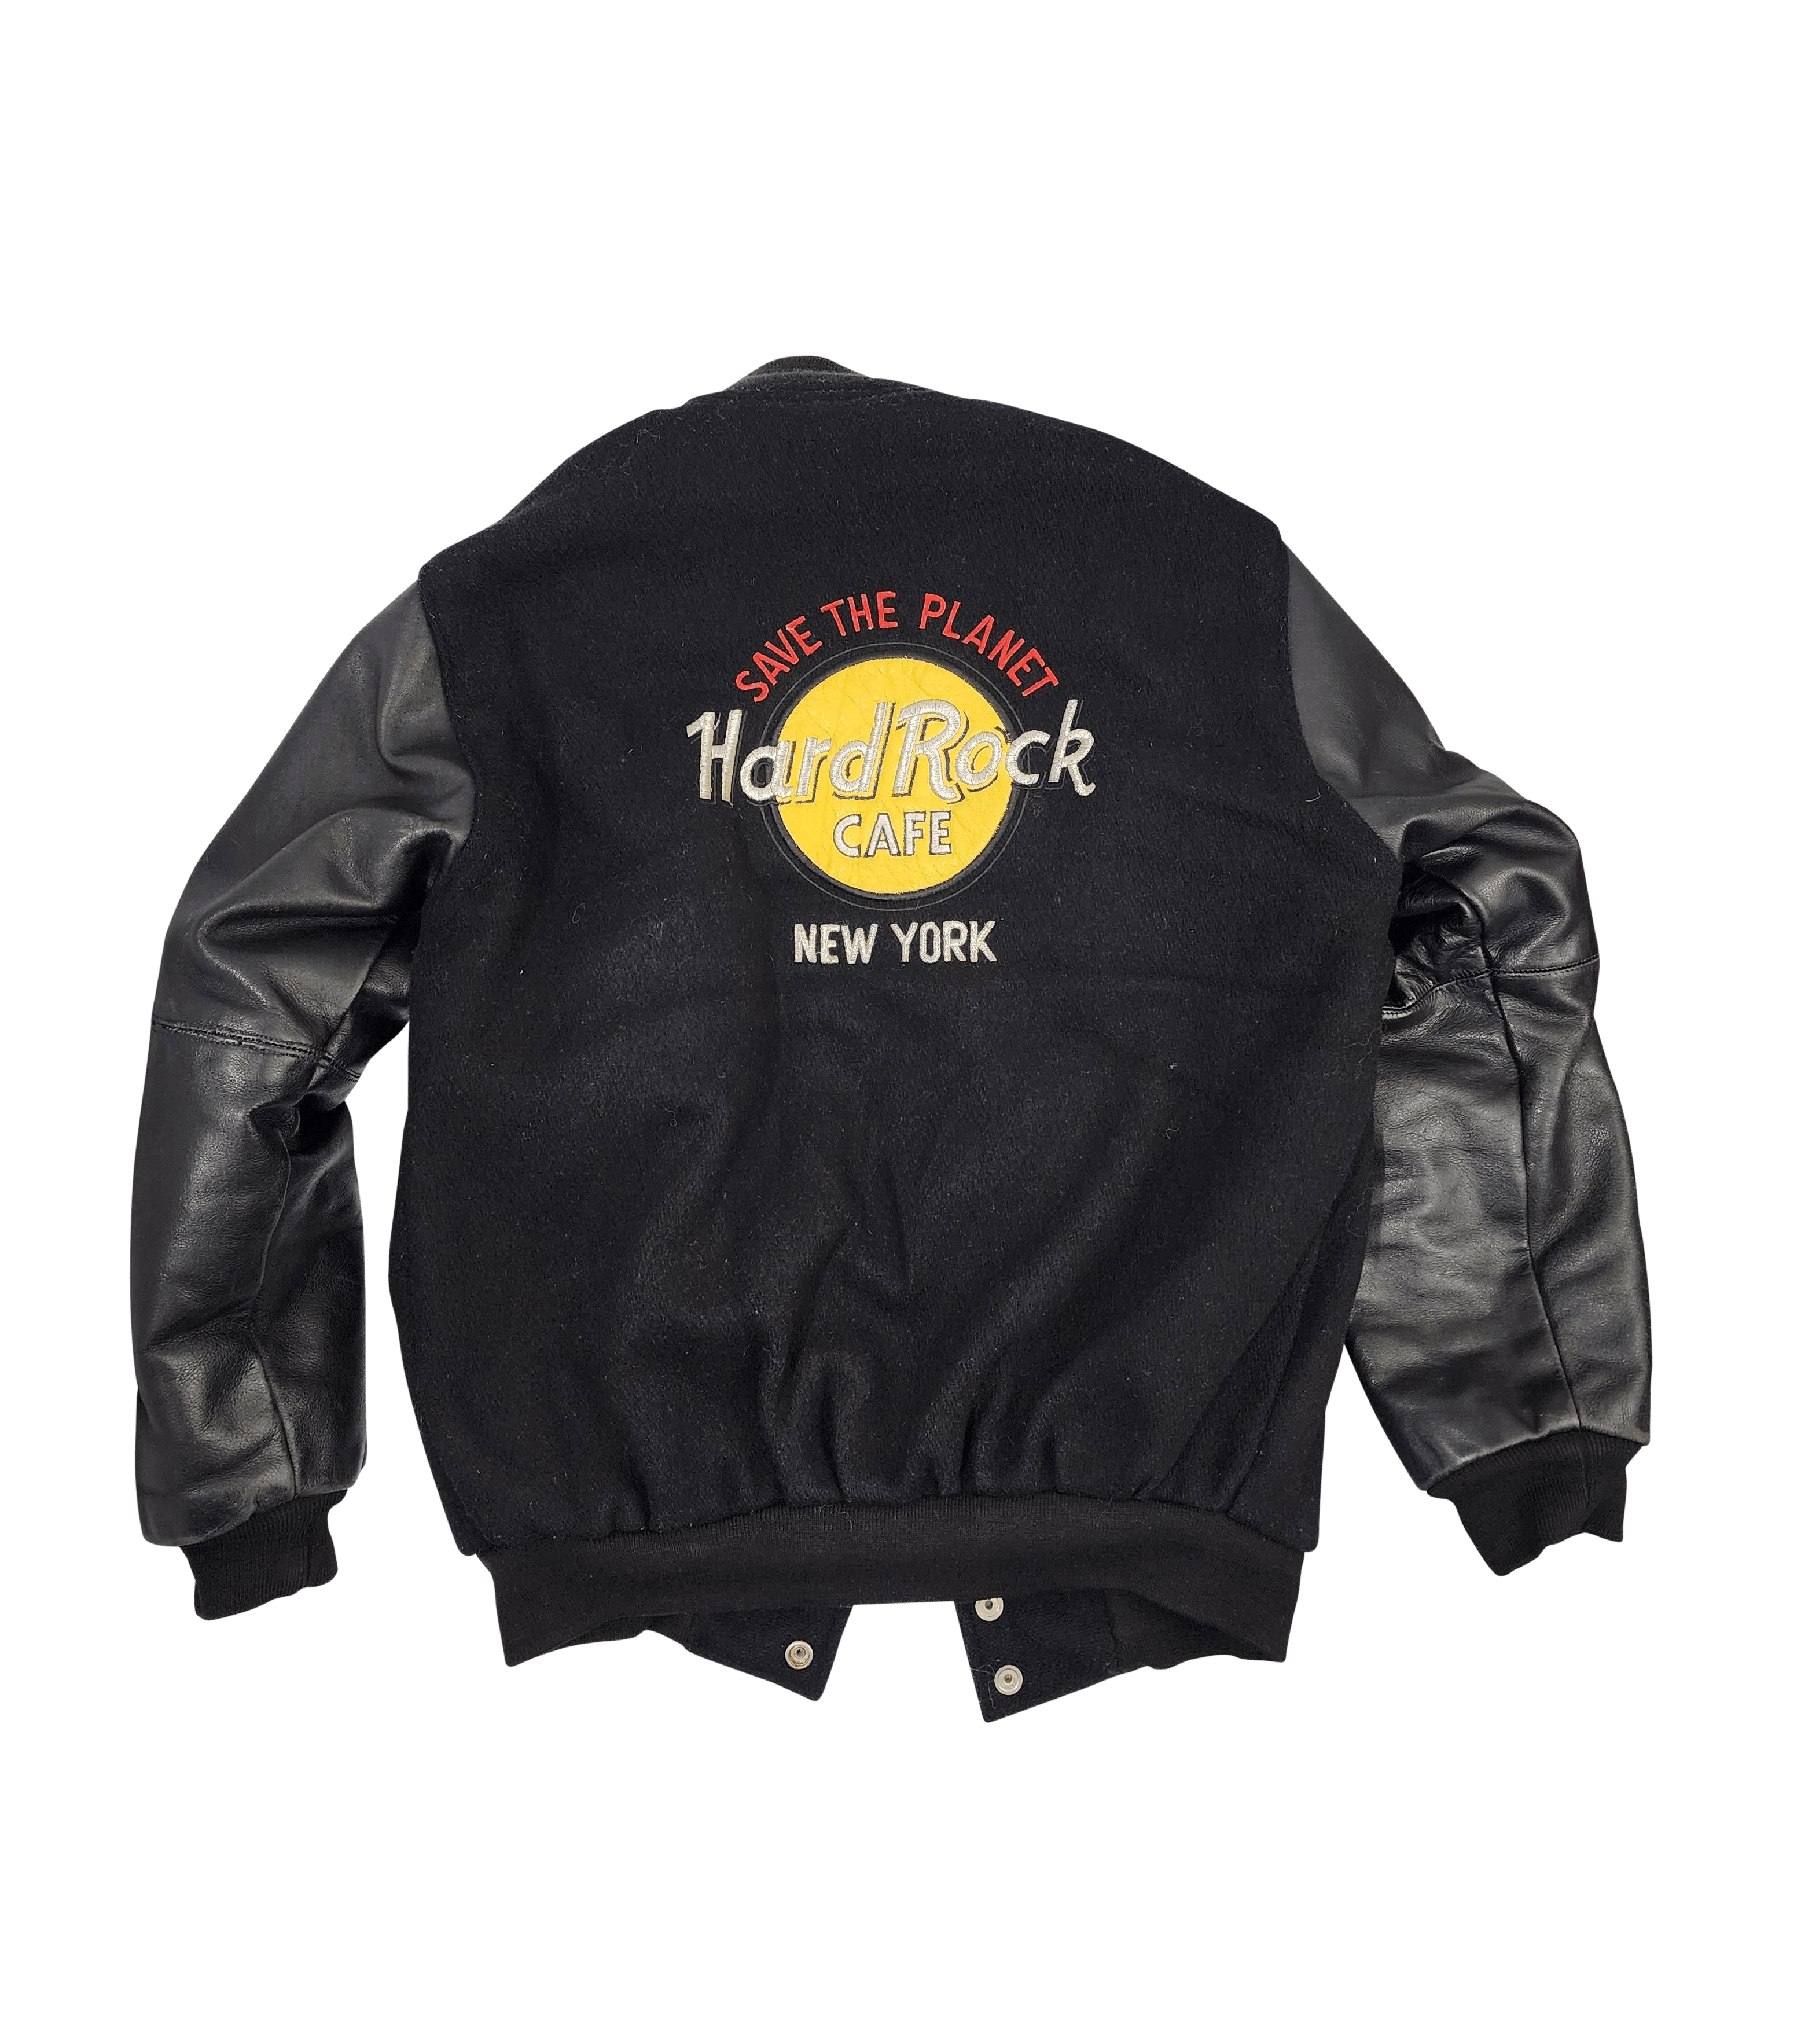 Vintage Vintage Hardrock Cafe Leather Bomber Jacket New York Size US M / EU 48-50 / 2 - 2 Preview